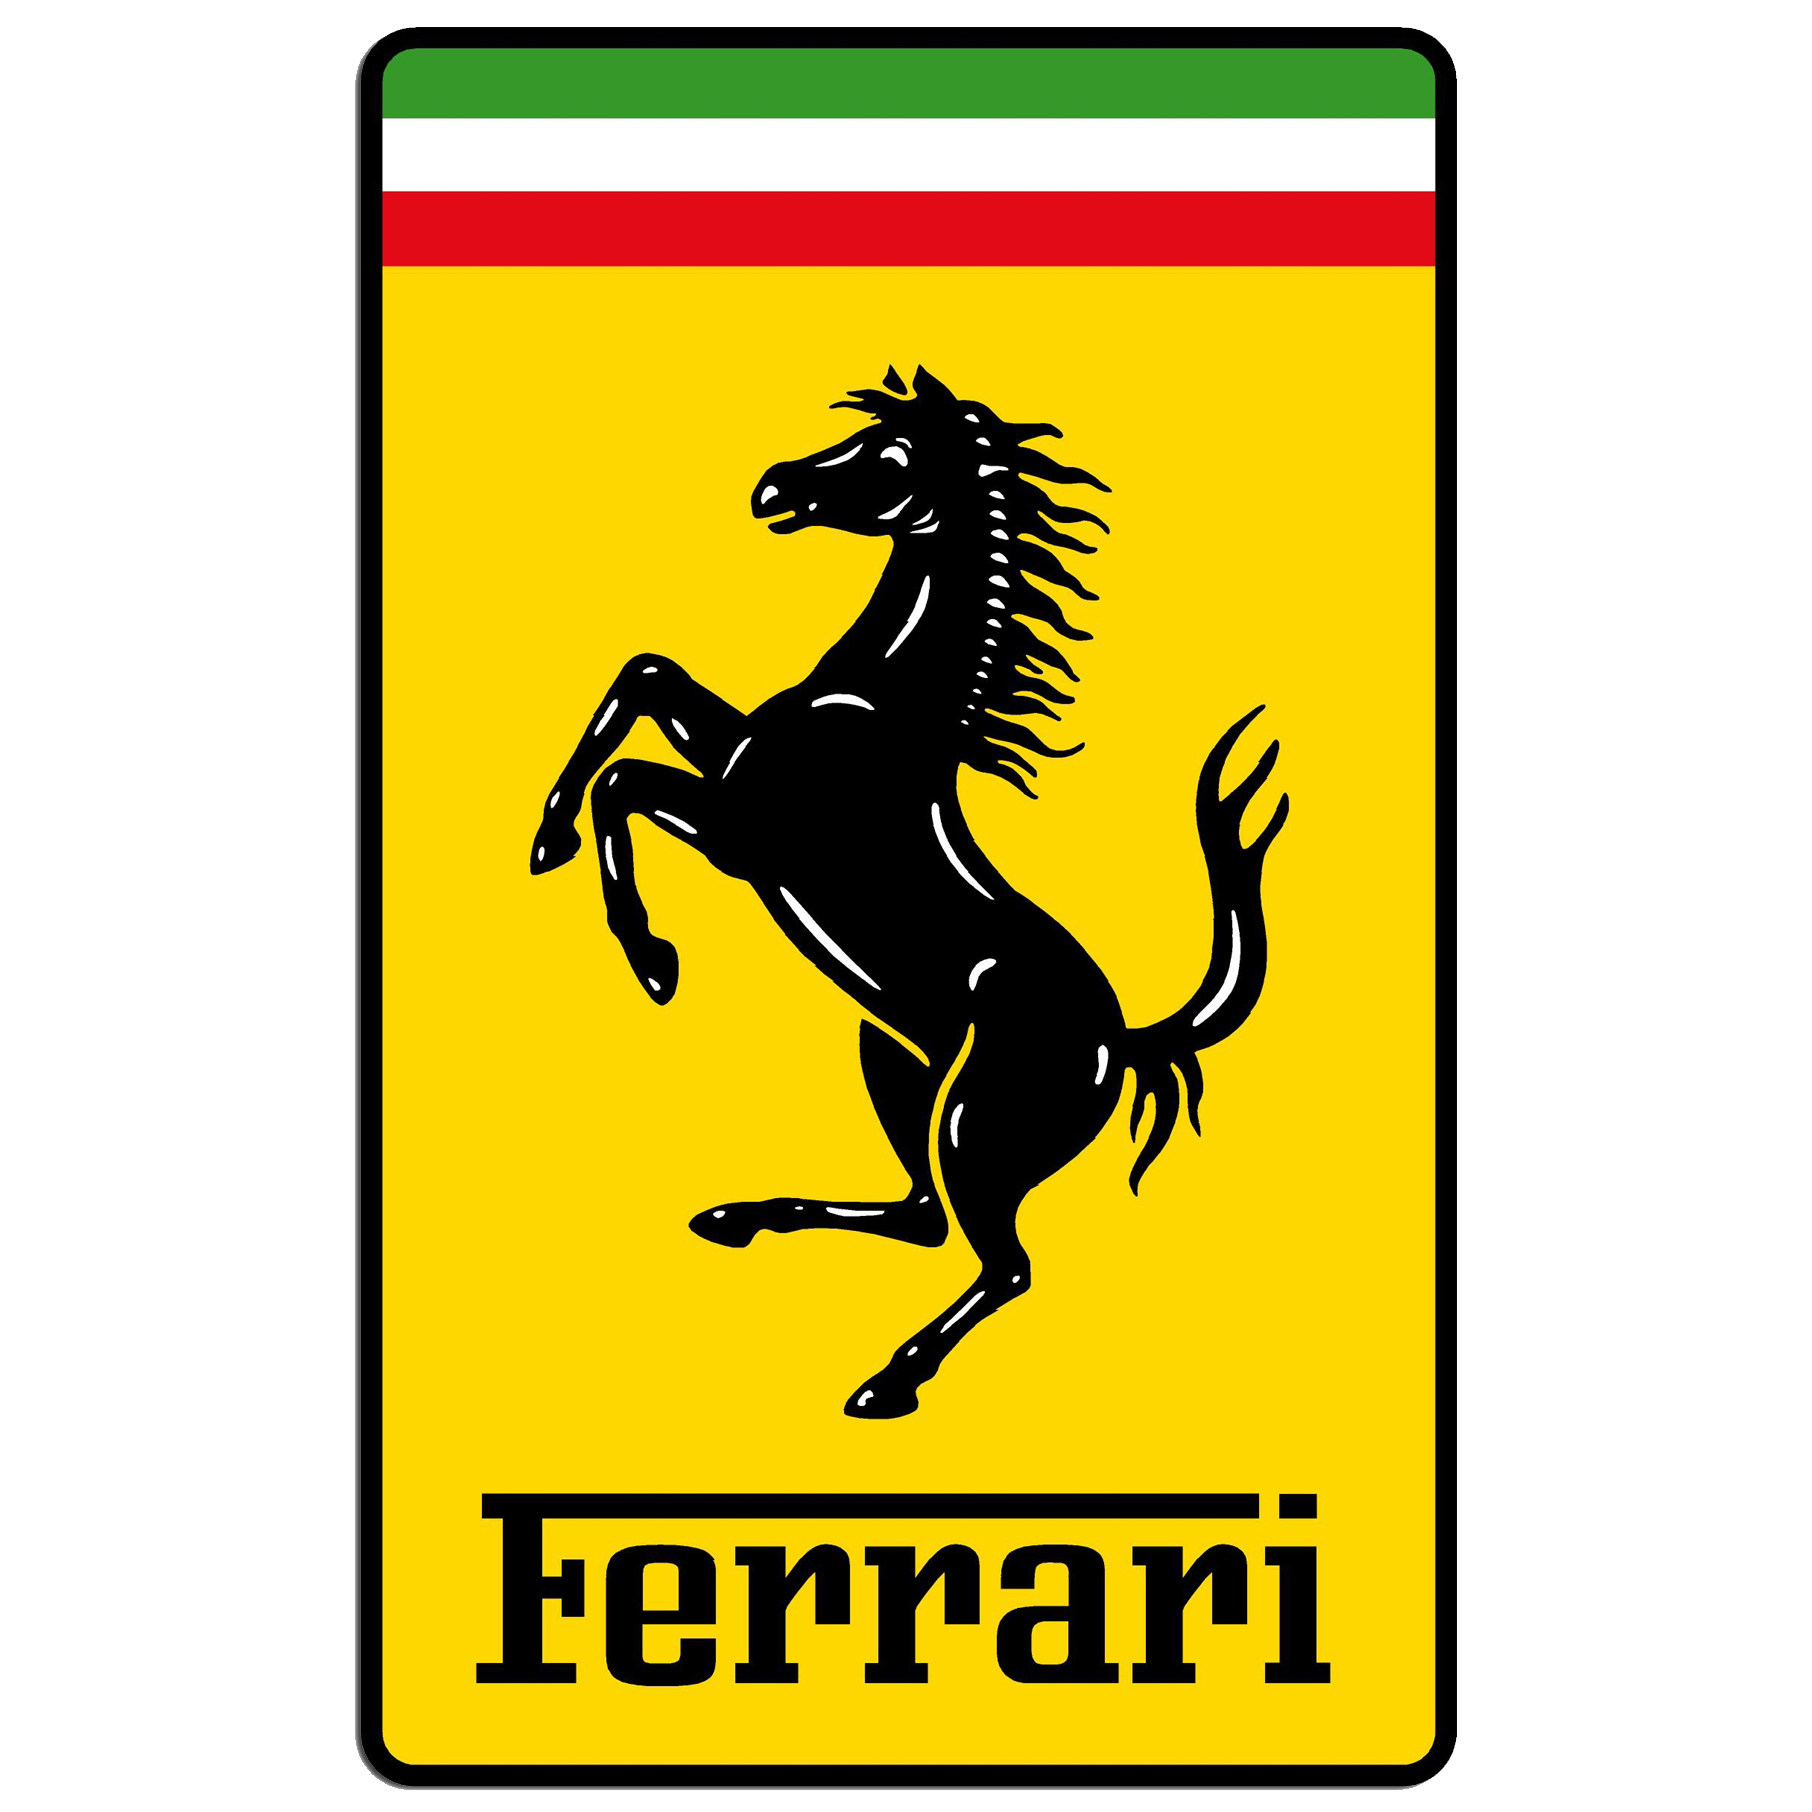 Ferrari F355 (1994 - 1999) for sale